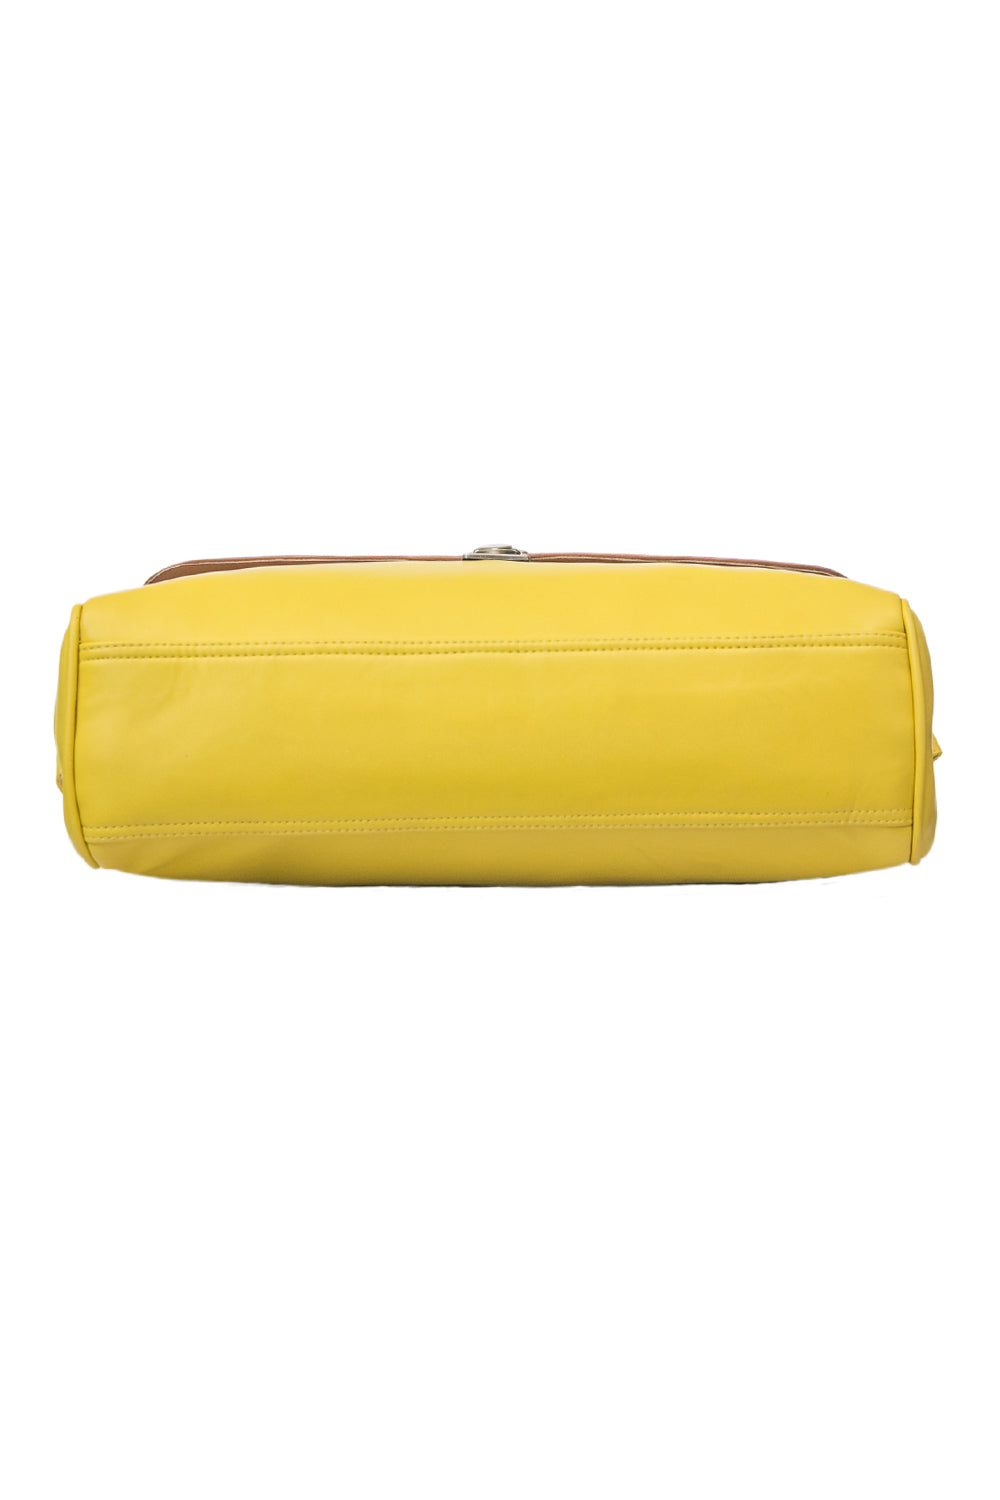 Yellow Laptop Bag